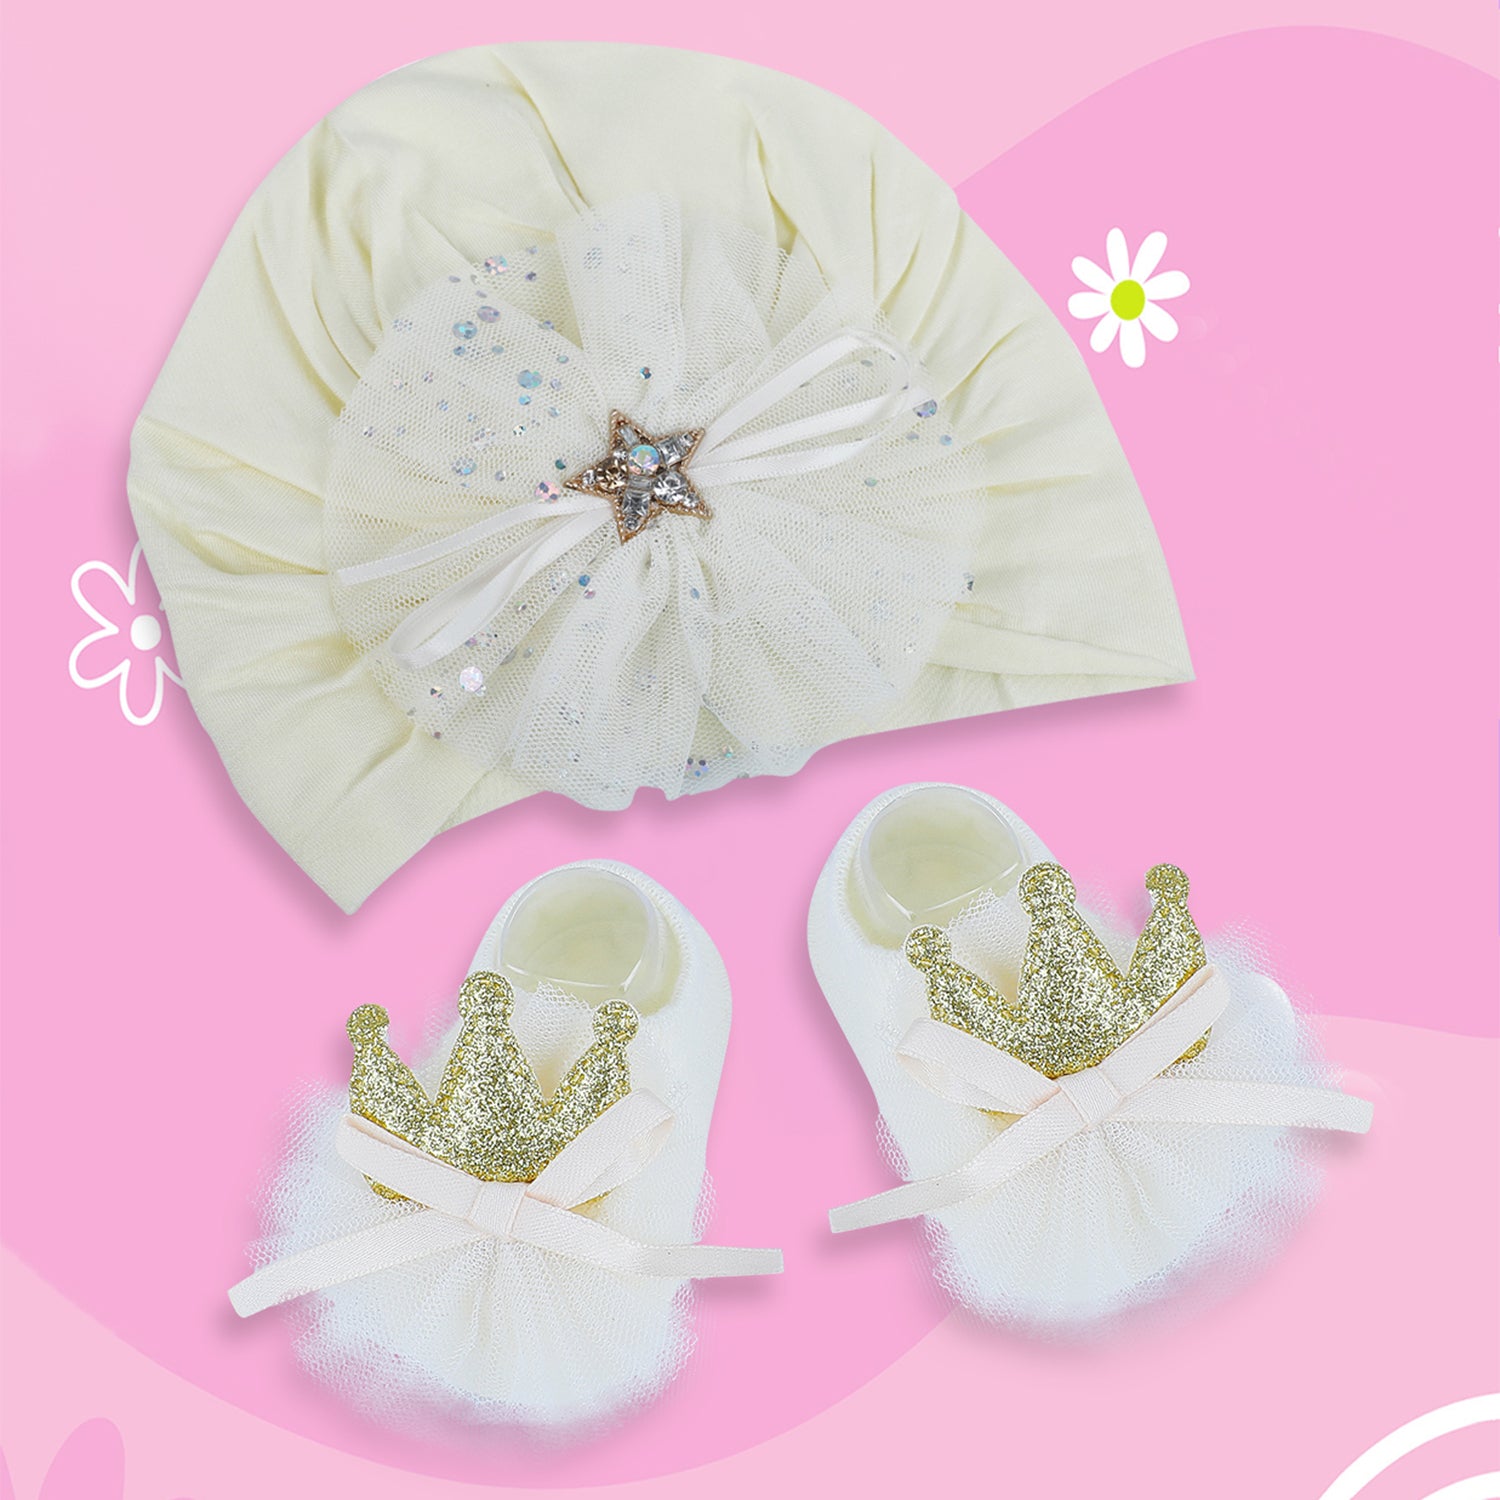 Baby Moo Royal Princess Crown Matching Cap And Socks Set - Yellow - Baby Moo